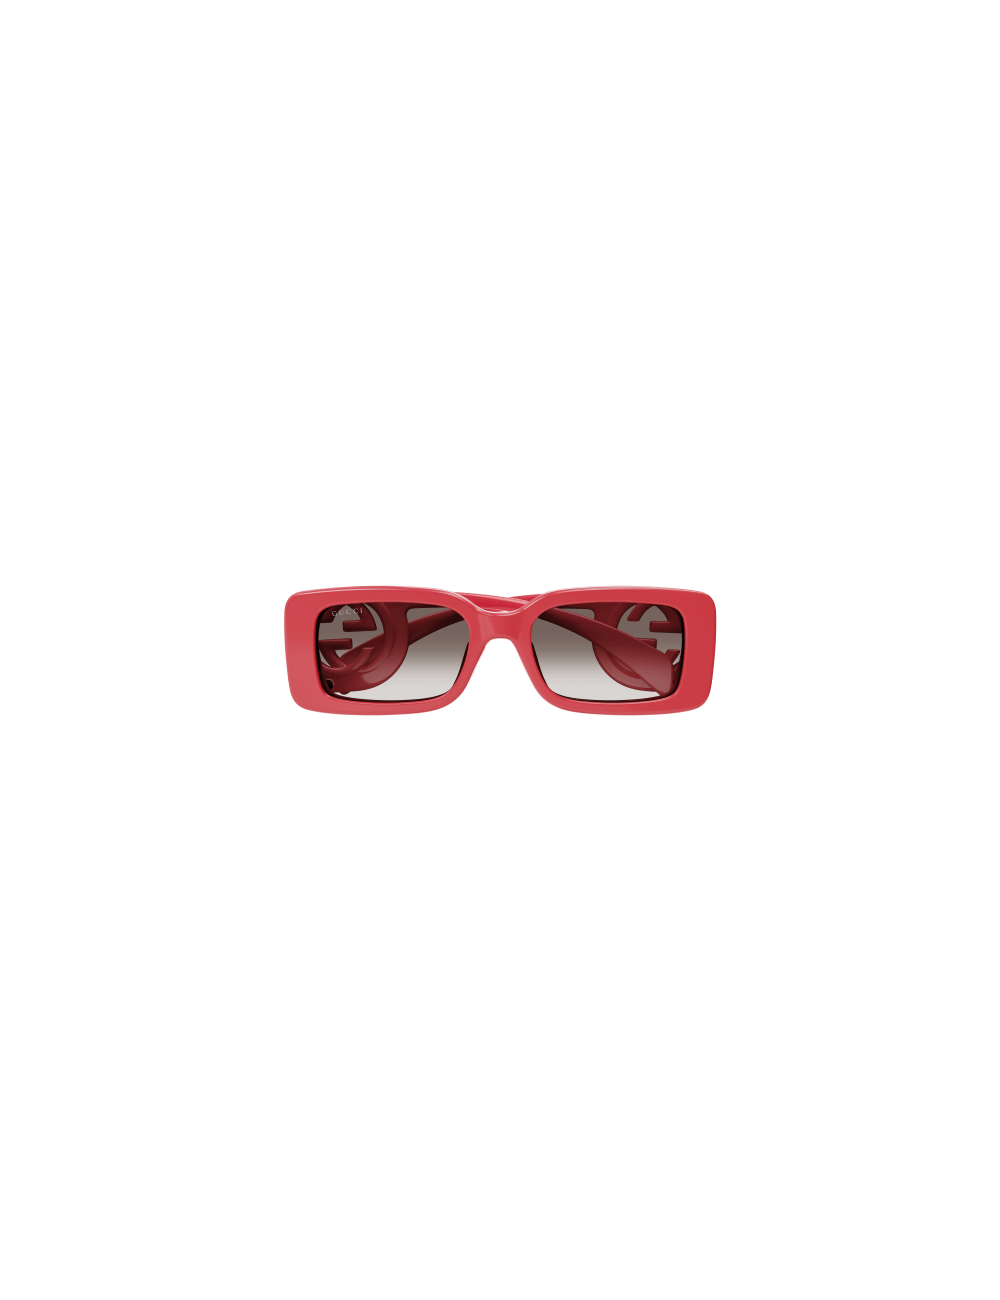 Gucci GG1325S Women Sunglasses - Black